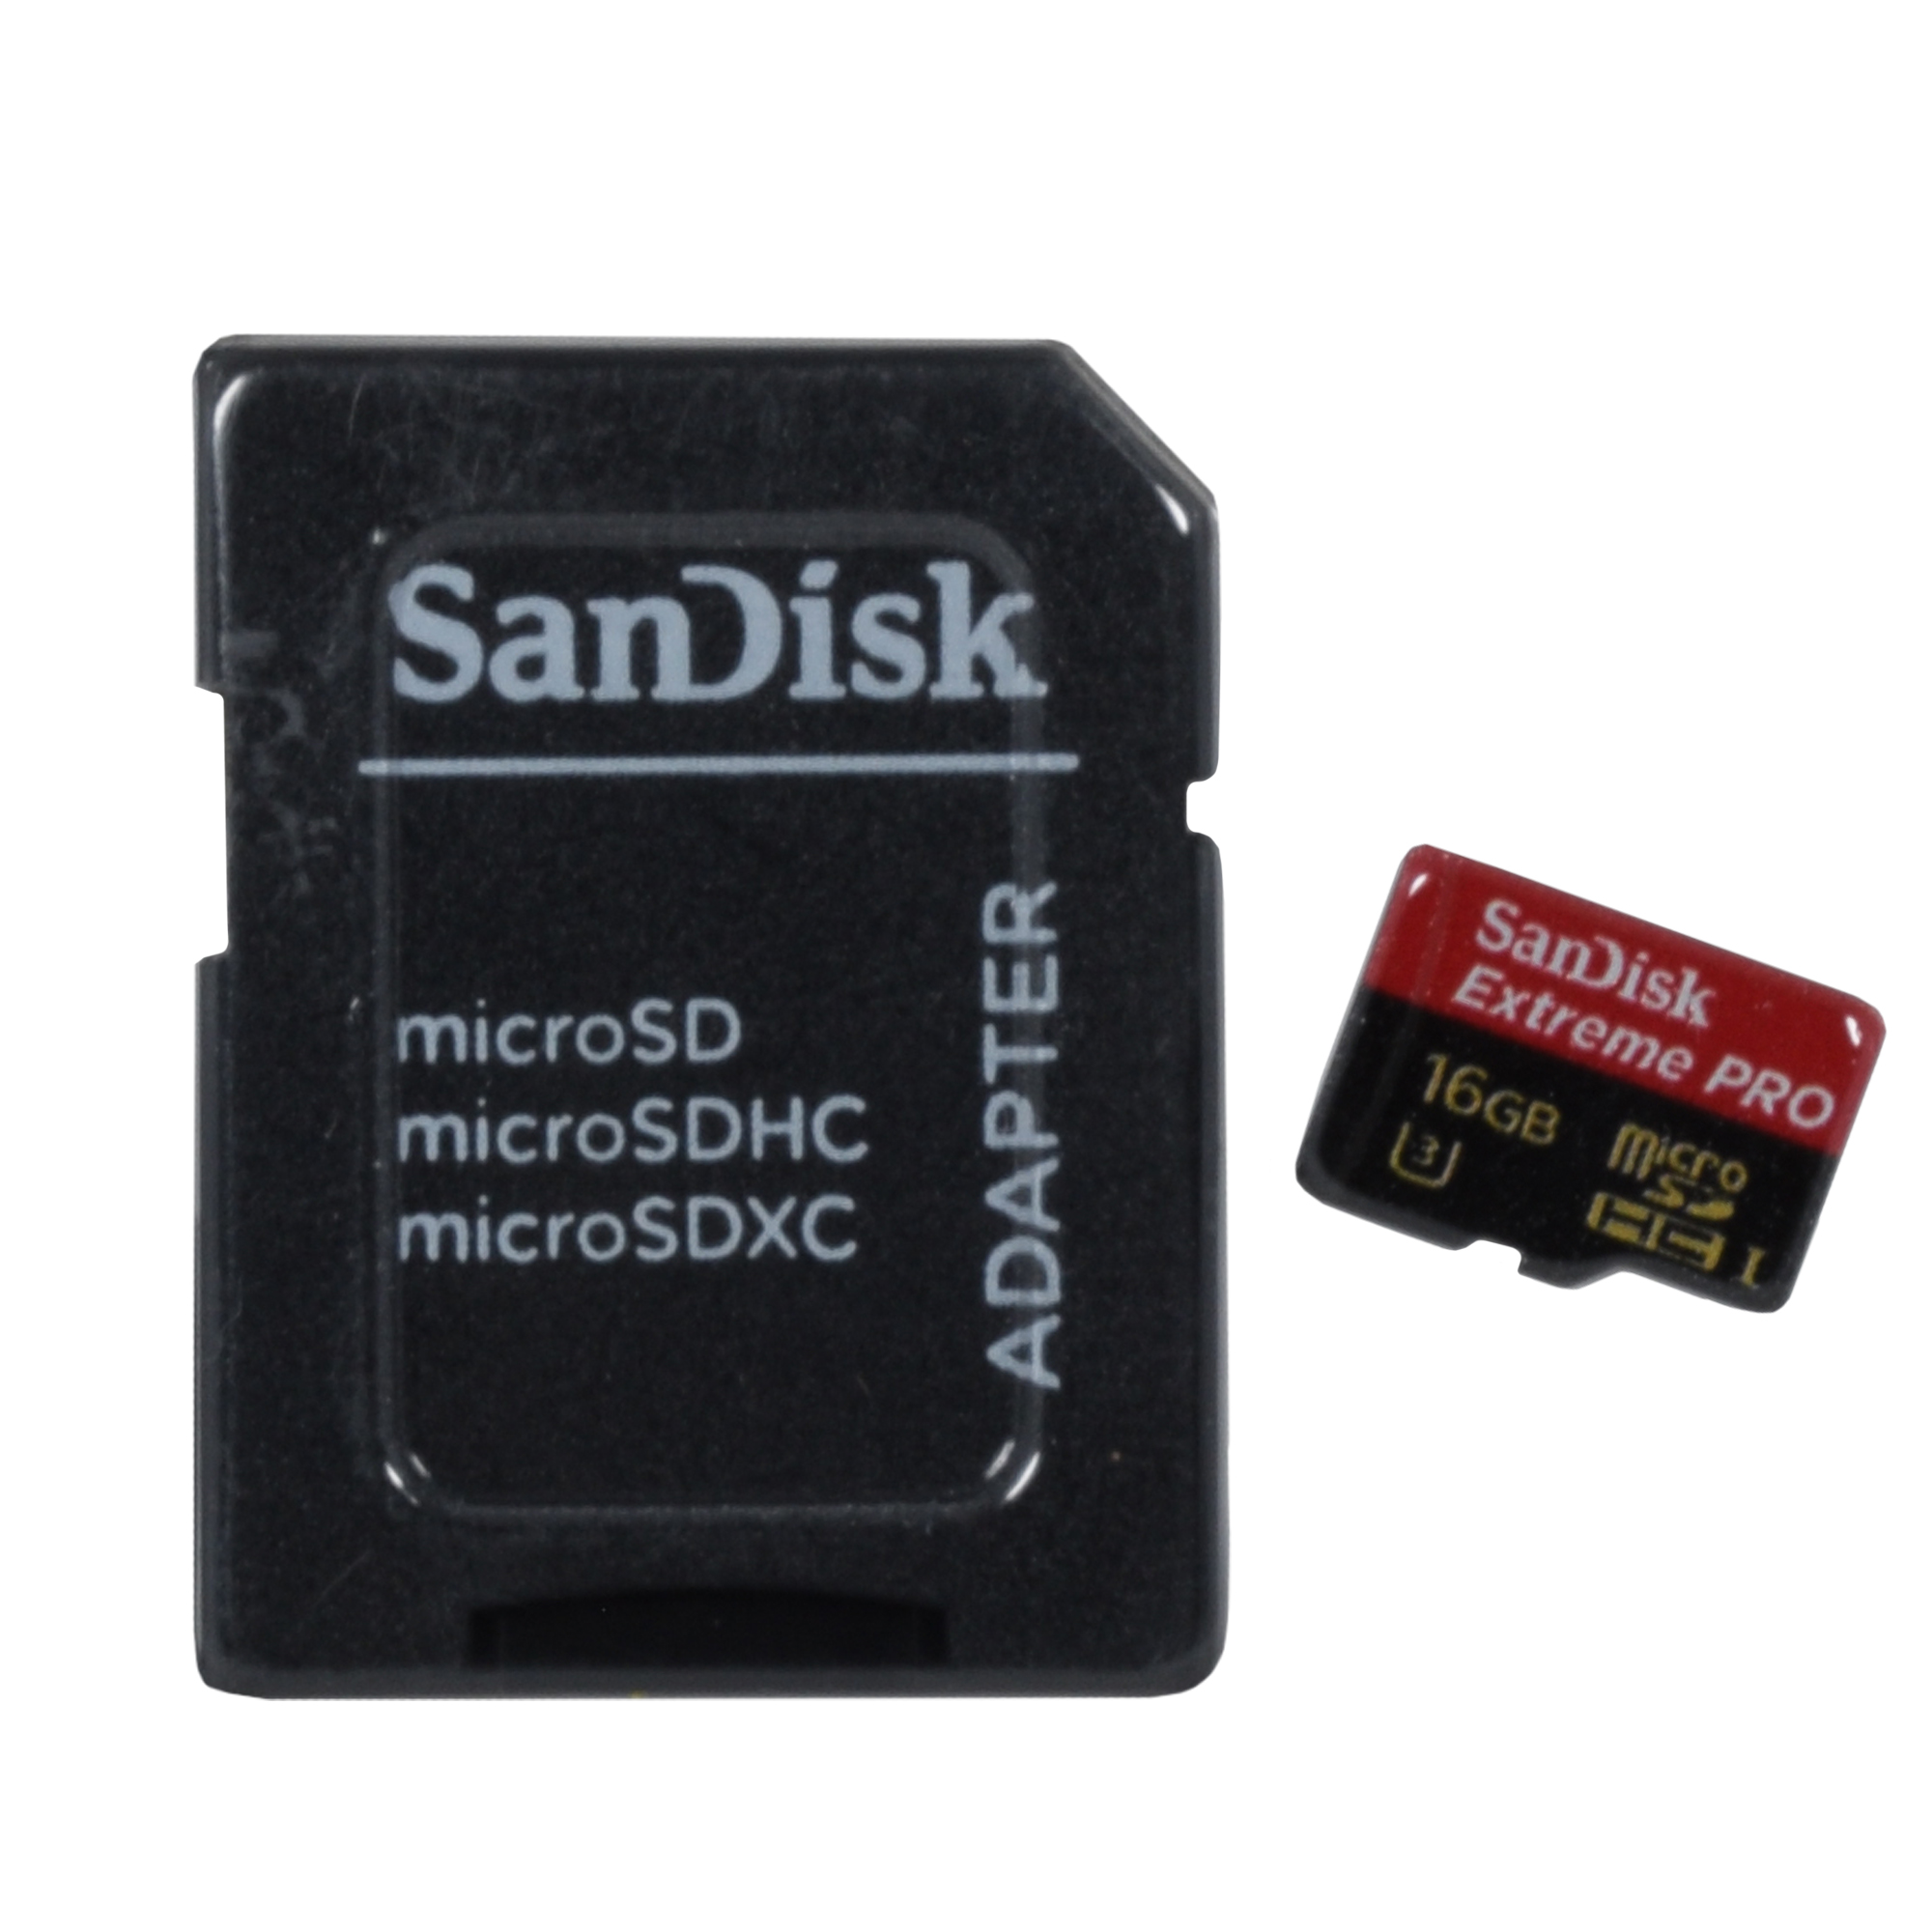 کارت حافظه Micro SDXC سن دیسک مدل Extreme PRO کلاس 3 استاندارد Extreme سرعت95Mb/s همراه آداپتور SD ظرفیت  16 گیگابایت